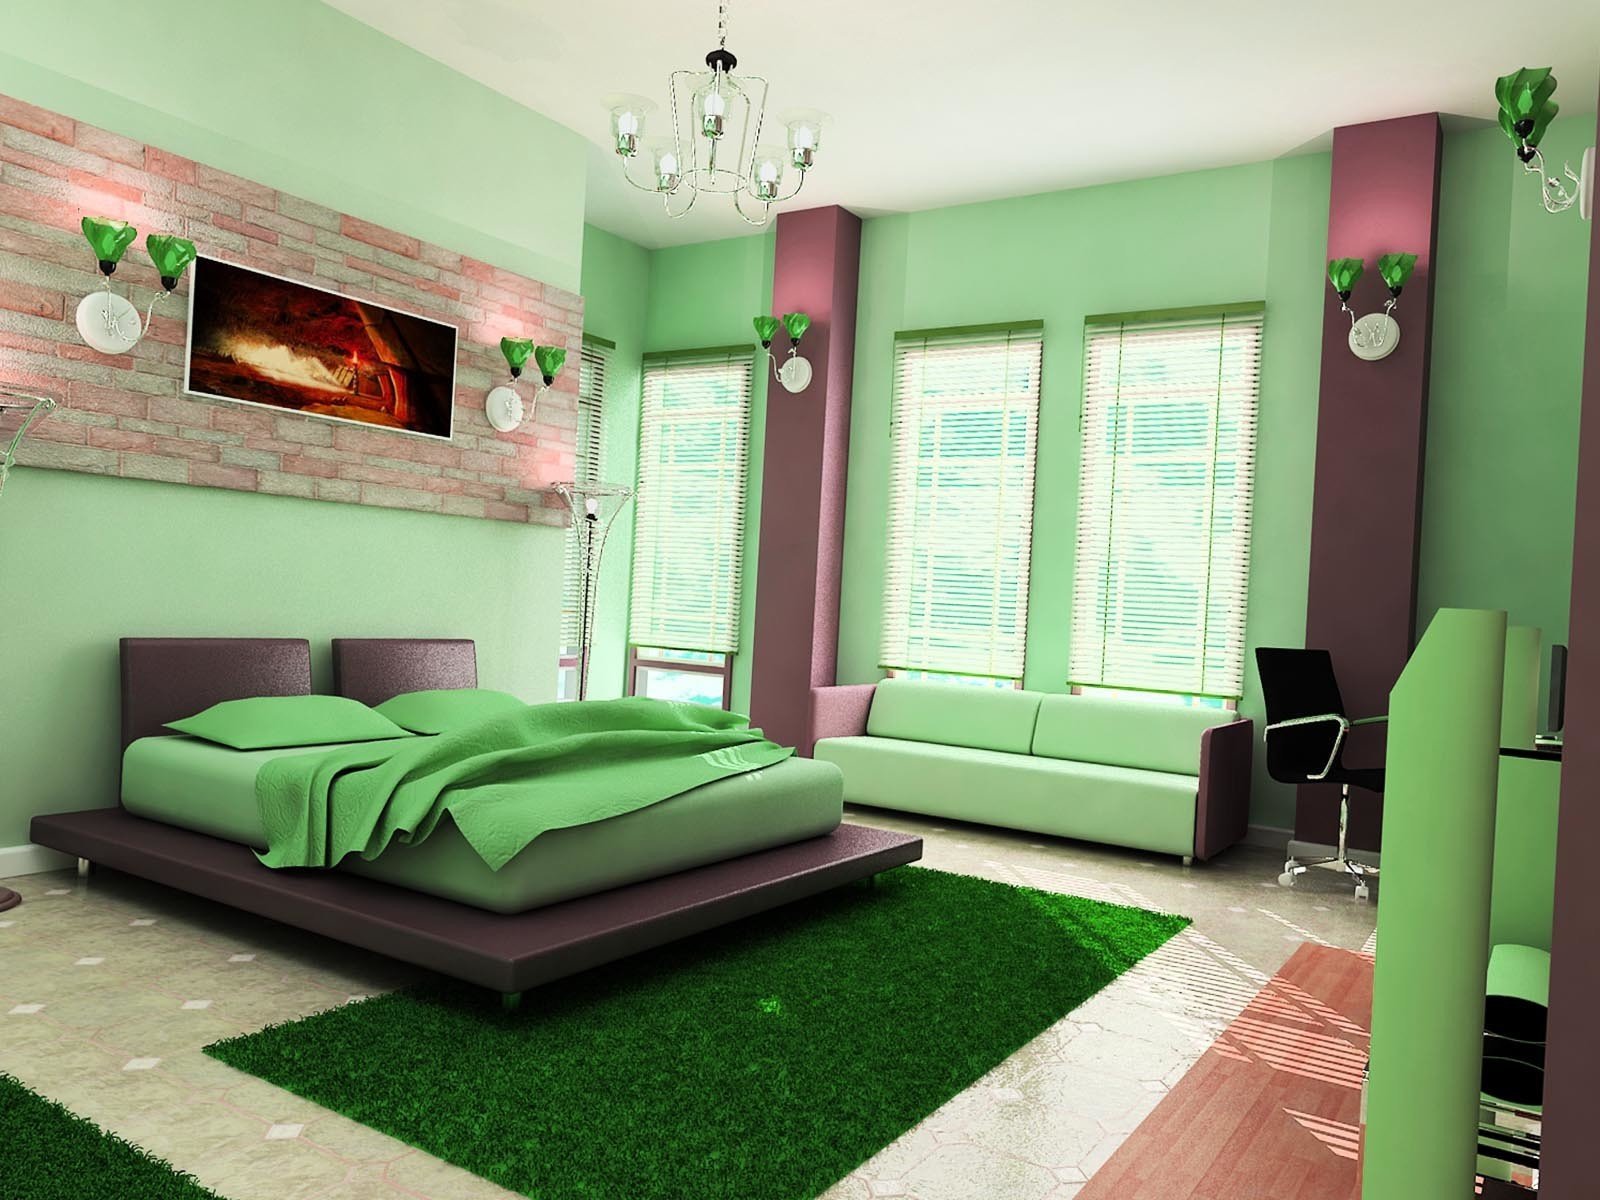 Обои в зеленых тонах. Интерьер спальни в зеленом цвете. Зеленые стены в спальне. Зеленые обои в спальне. Сочетание розового и зеленого в интерьере.